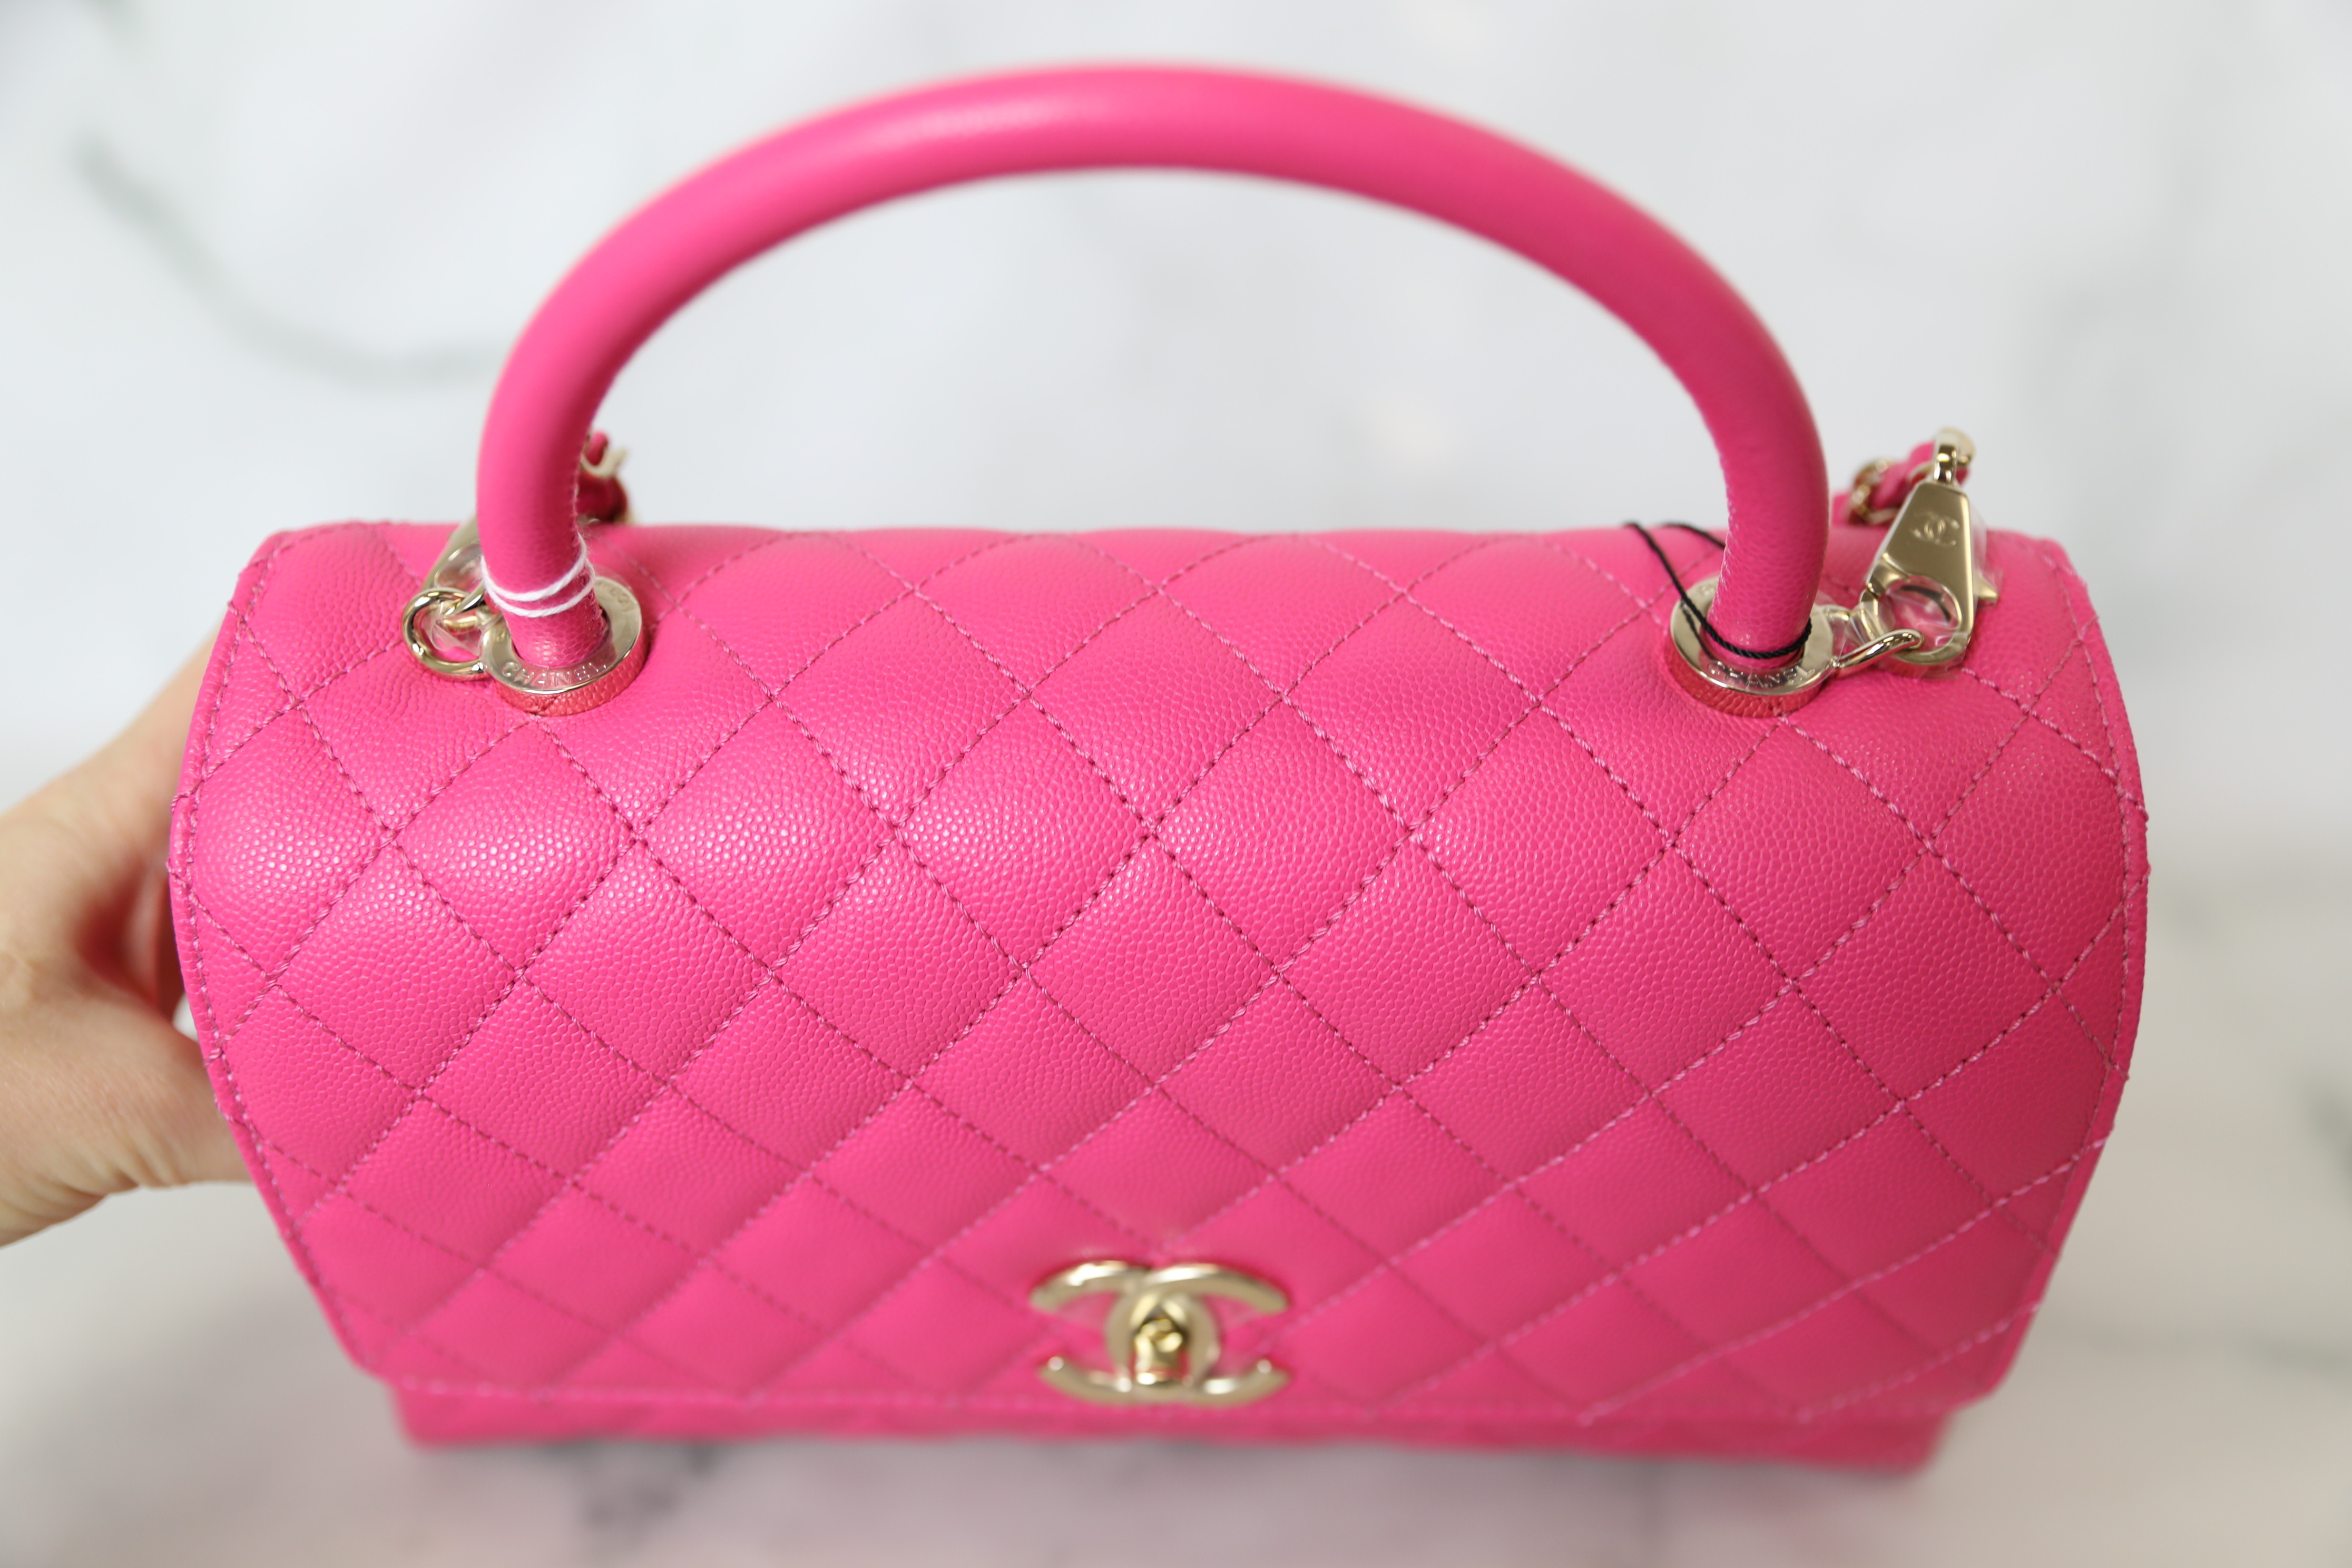 Chanel Coco Handle Mini, Bright Pink Caviar with Gold Hardware, New in Box  WA001